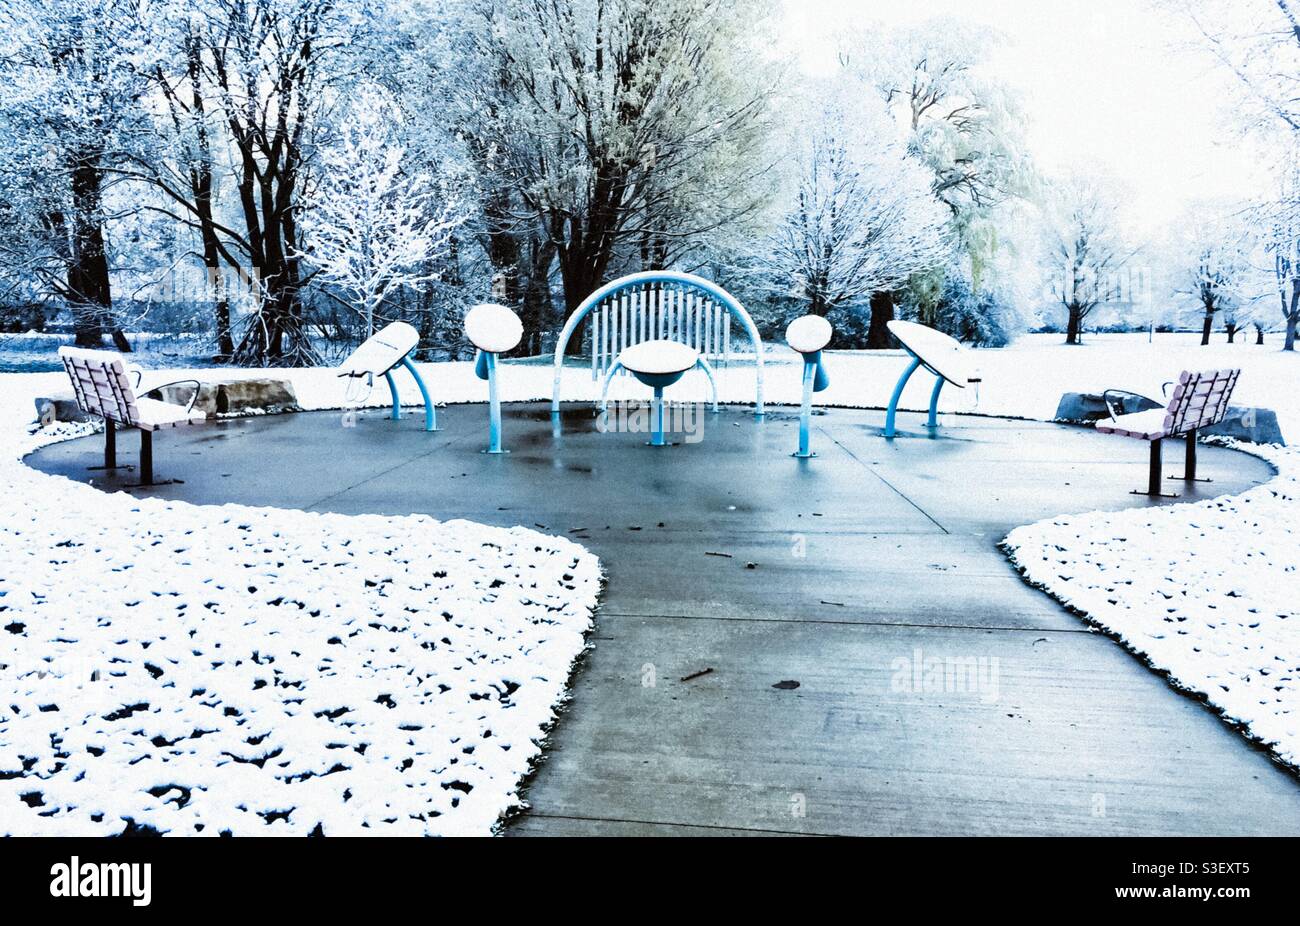 Musik im Winter im Freien, Ontario, Kanada. Die Bühne steht im Neuschnee. Warten auf einige Hardy Musiker und Zuhörer. Konzepte: Spiel, Kunst, Musik, Kultur, Natur, Kommunikation Stockfoto